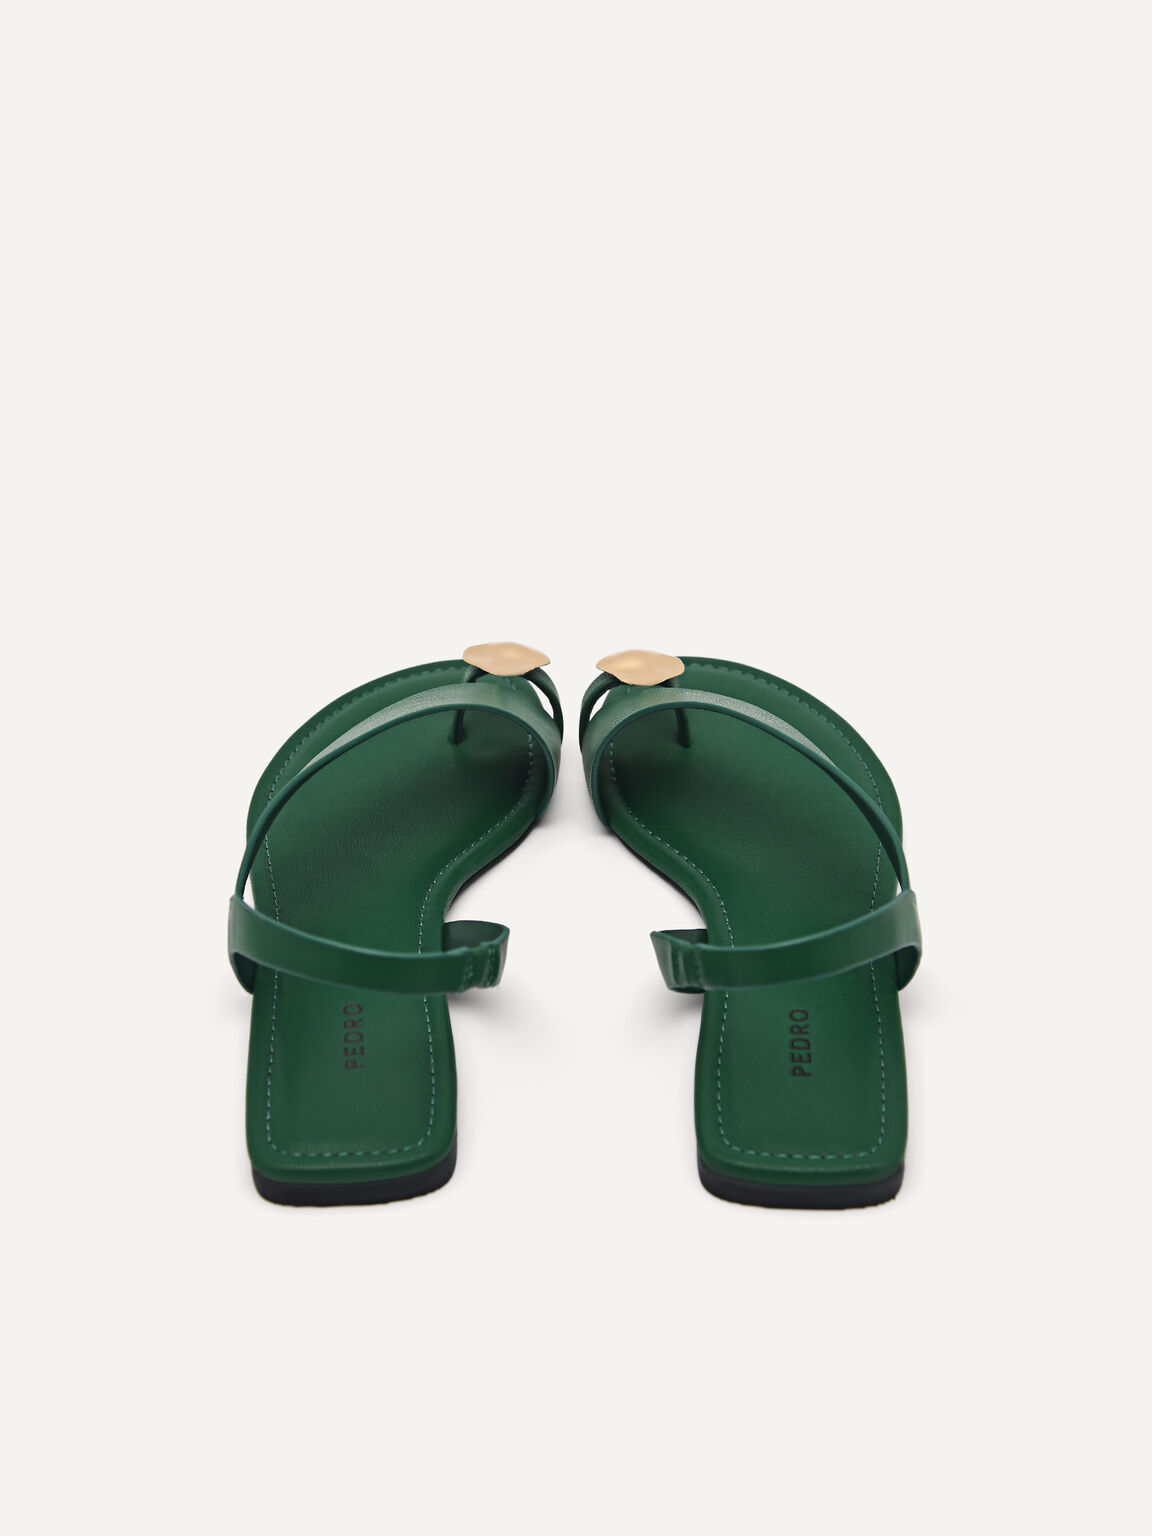 Alexis Toe Loop Sandals, Dark Green, hi-res